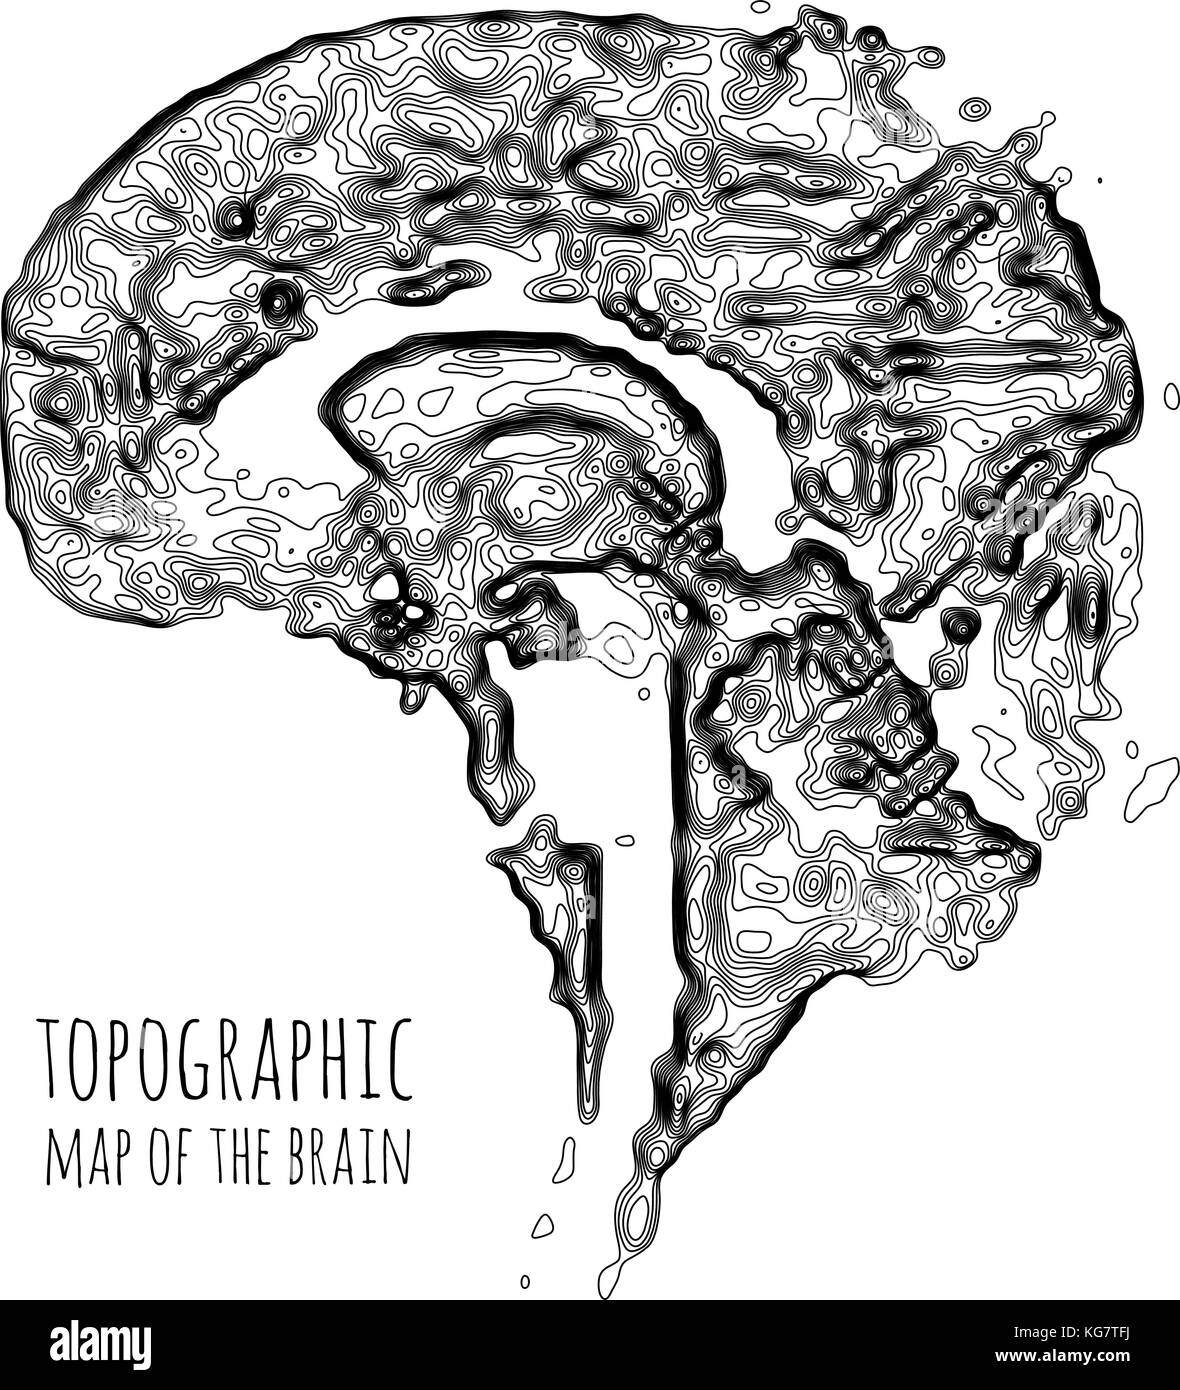 Das Gehirn in der Form einer topographischen Karte. das Konzept der modernen Technik, Datenübertragung zwischen Neuronen. Stock Vektor